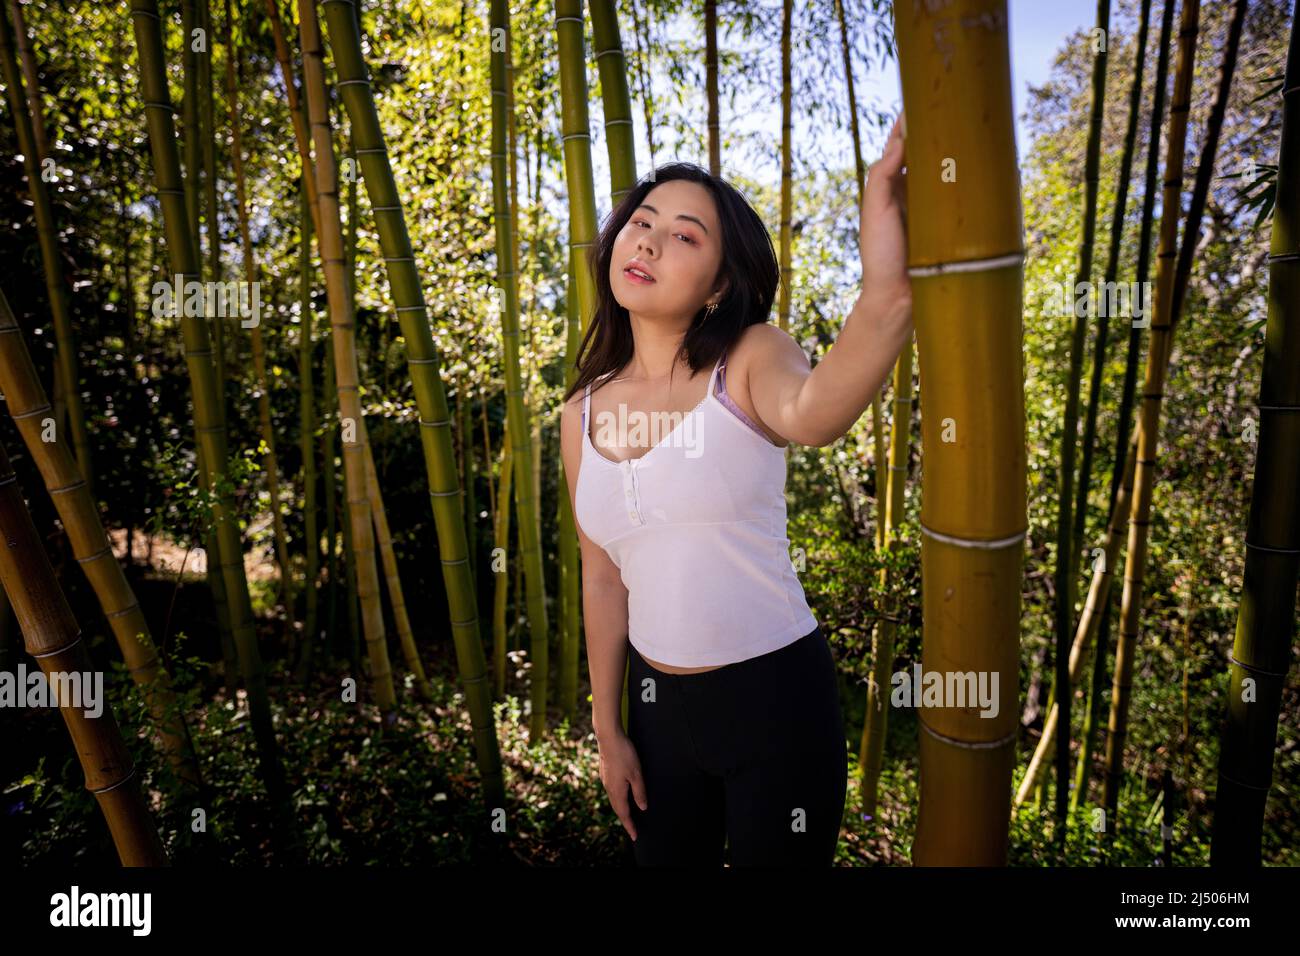 Jeune femme asiatique dans des vêtements décontractés de Springtime debout dans une grande bosquet de bambou Banque D'Images